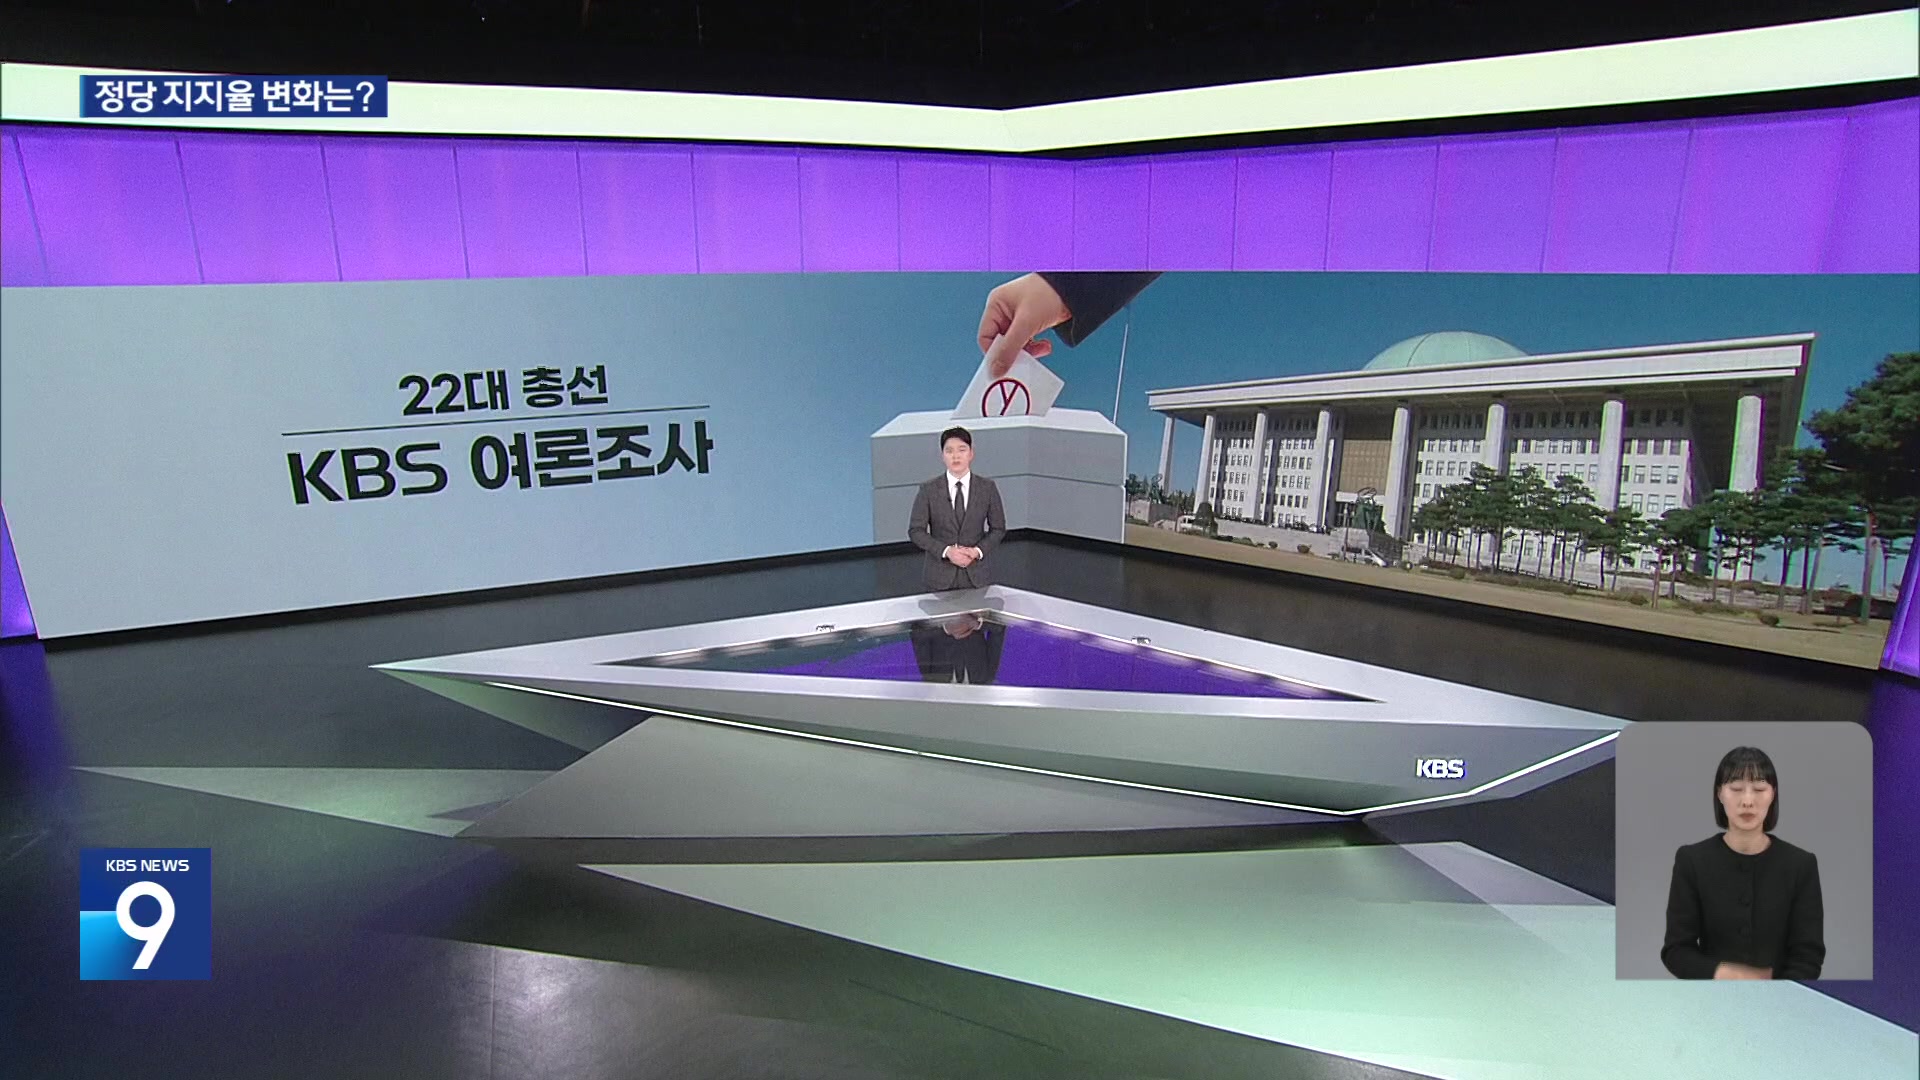 [총선][여론조사] 전국 정당지지율(KBS 조사 추이), 비례정당 지지율